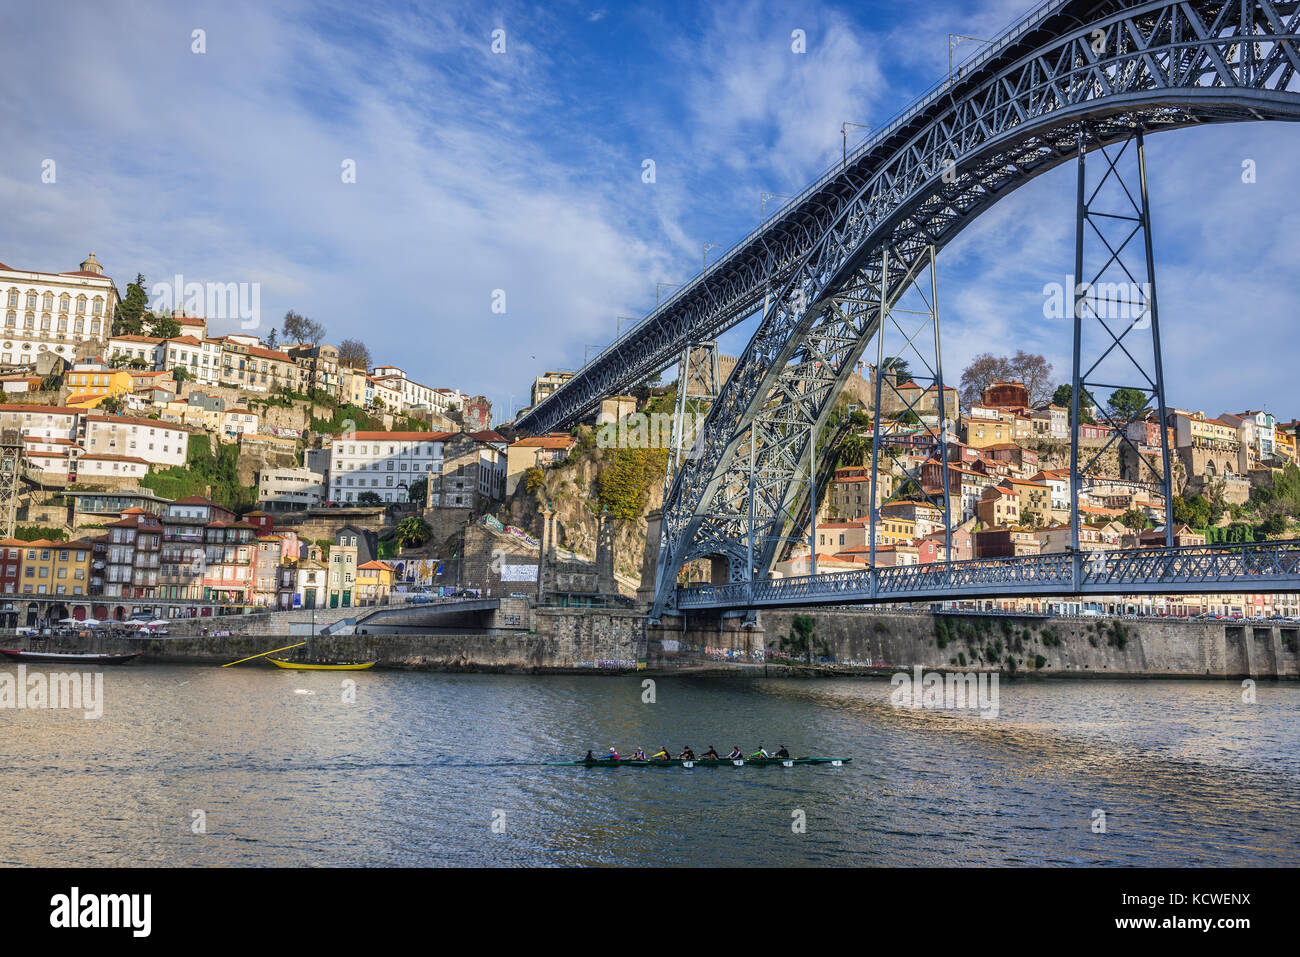 Vogatori in un coxed otto, una barca a remi spazzata sul fiume Douro visto dalla città di Gaia, Portogallo. Porto città sullo sfondo, vista con il ponte Dom Luis I. Foto Stock